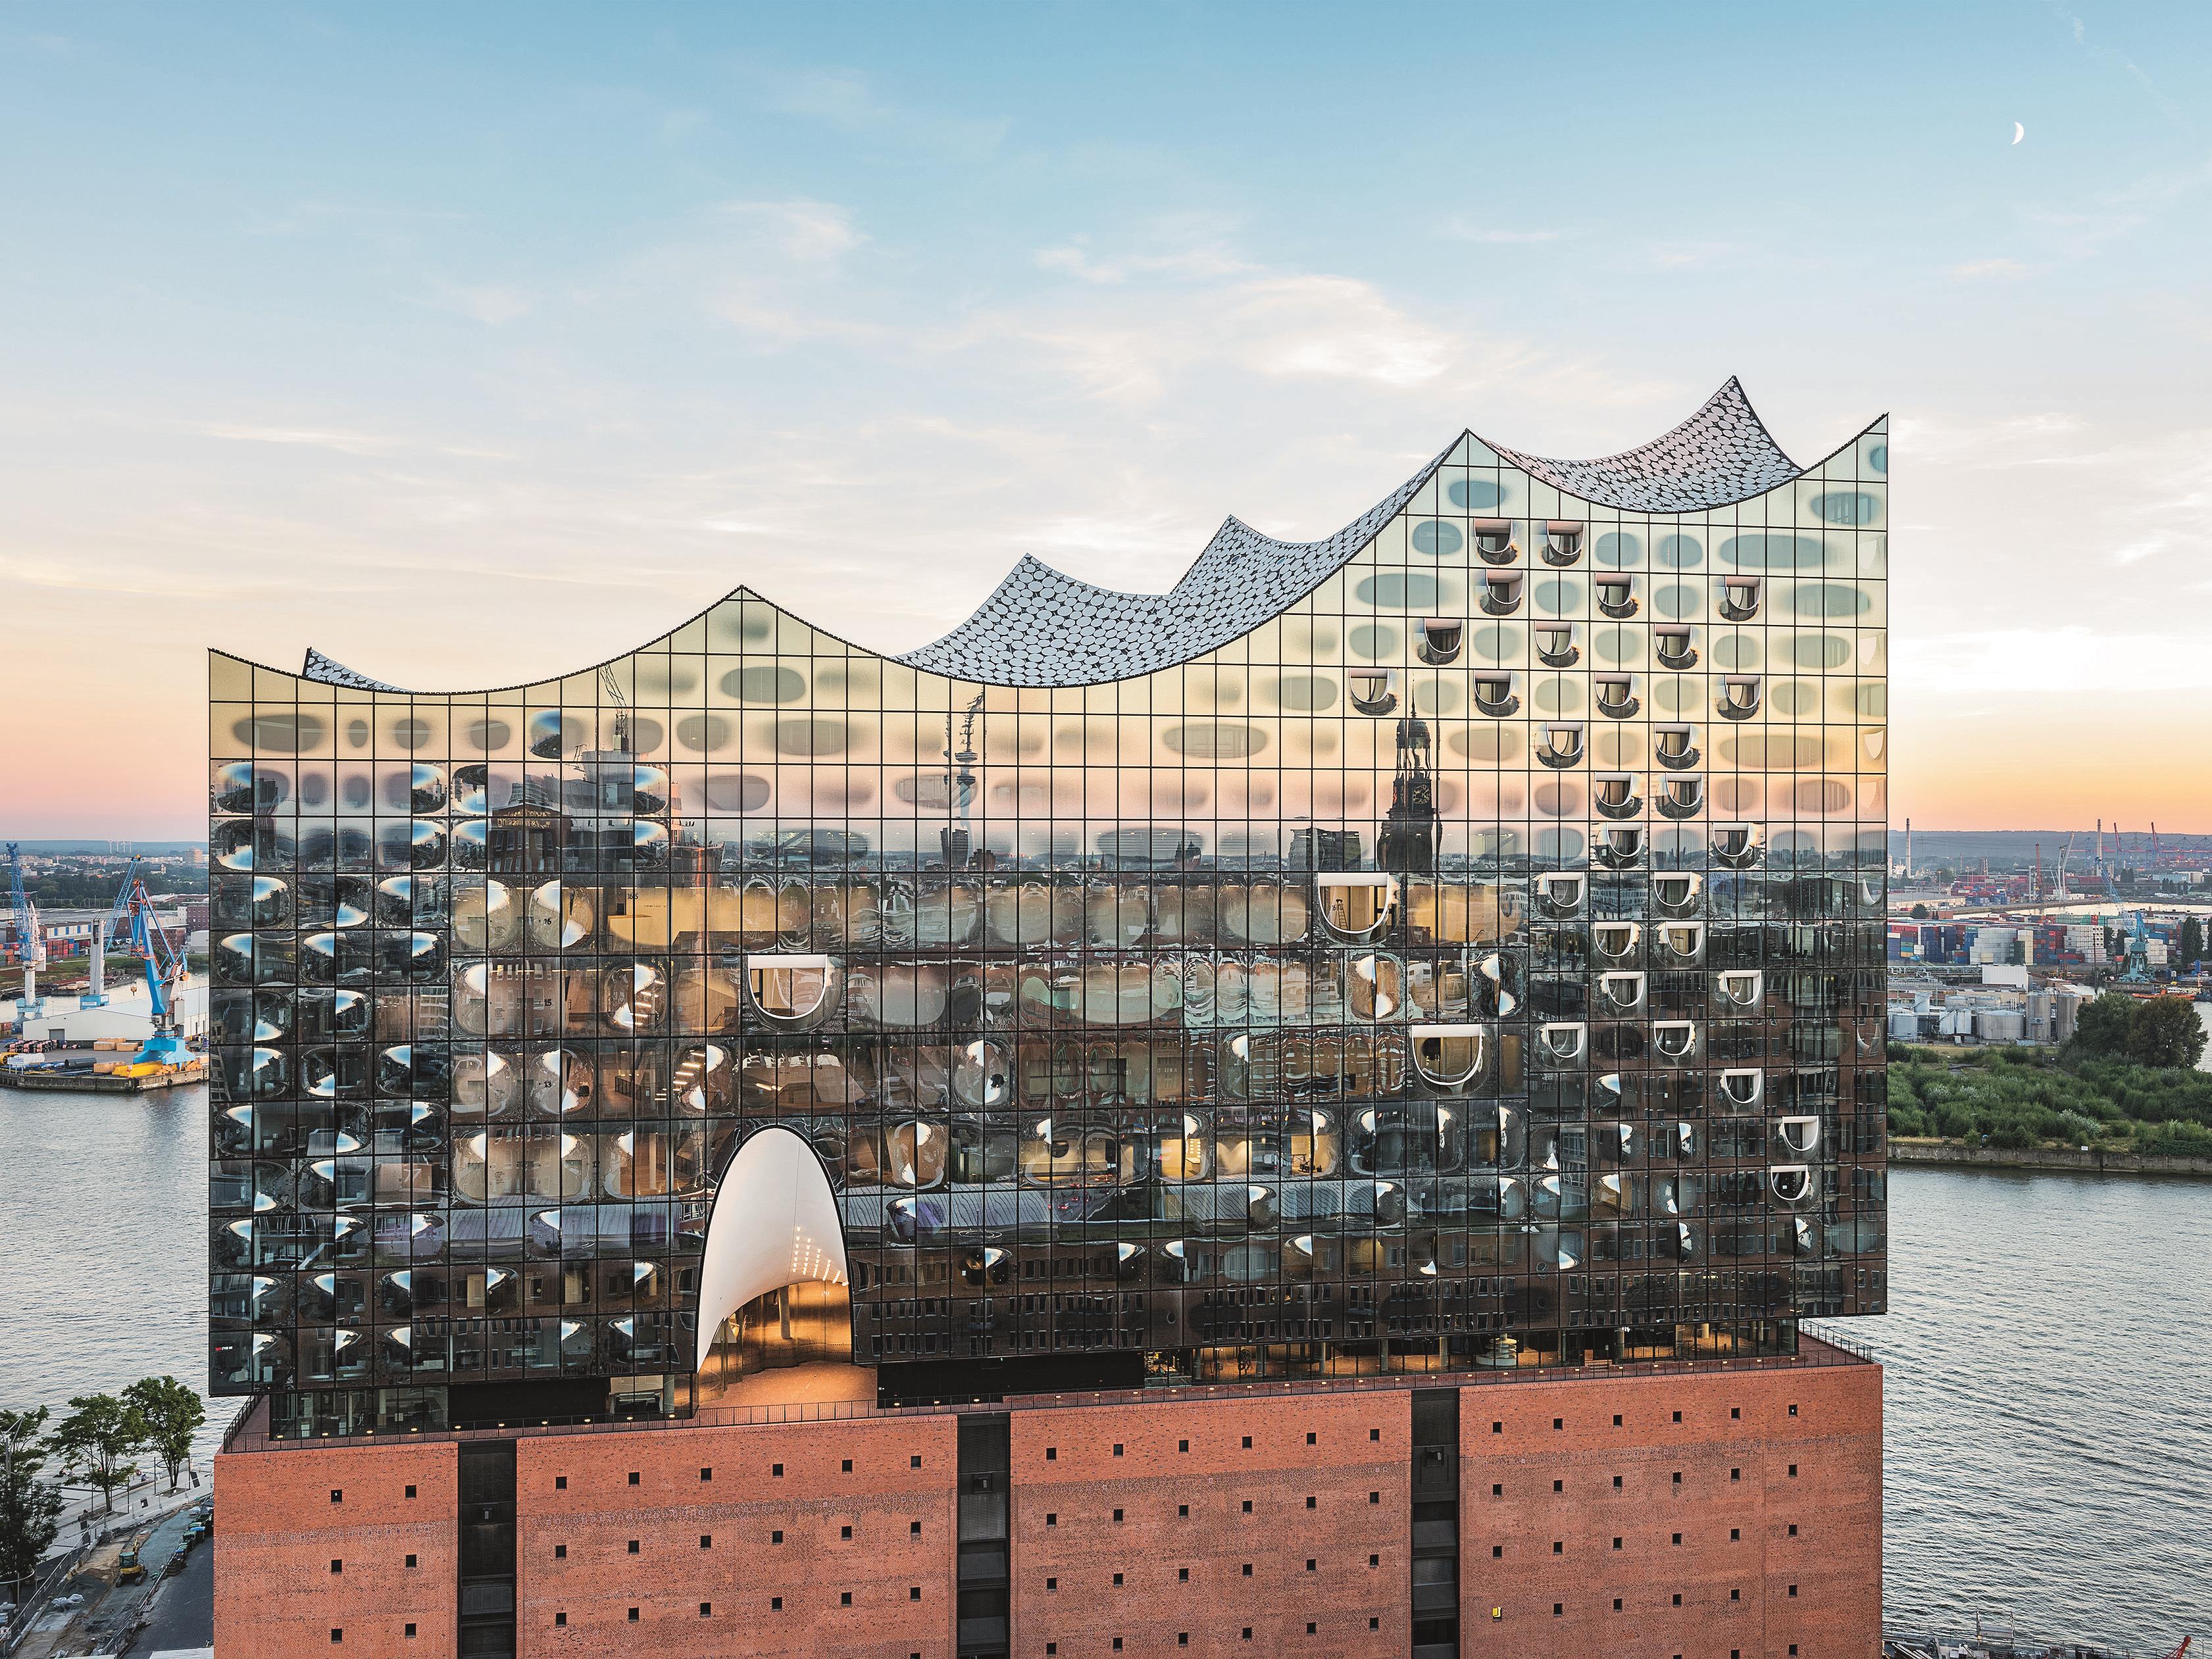 Die Elbphilharmonie besteht aus einem ehemaligen Speicher mit Backsteinfassade, auf den ein spektakulärer zeltartiger Glasbau gesetzt wurde.